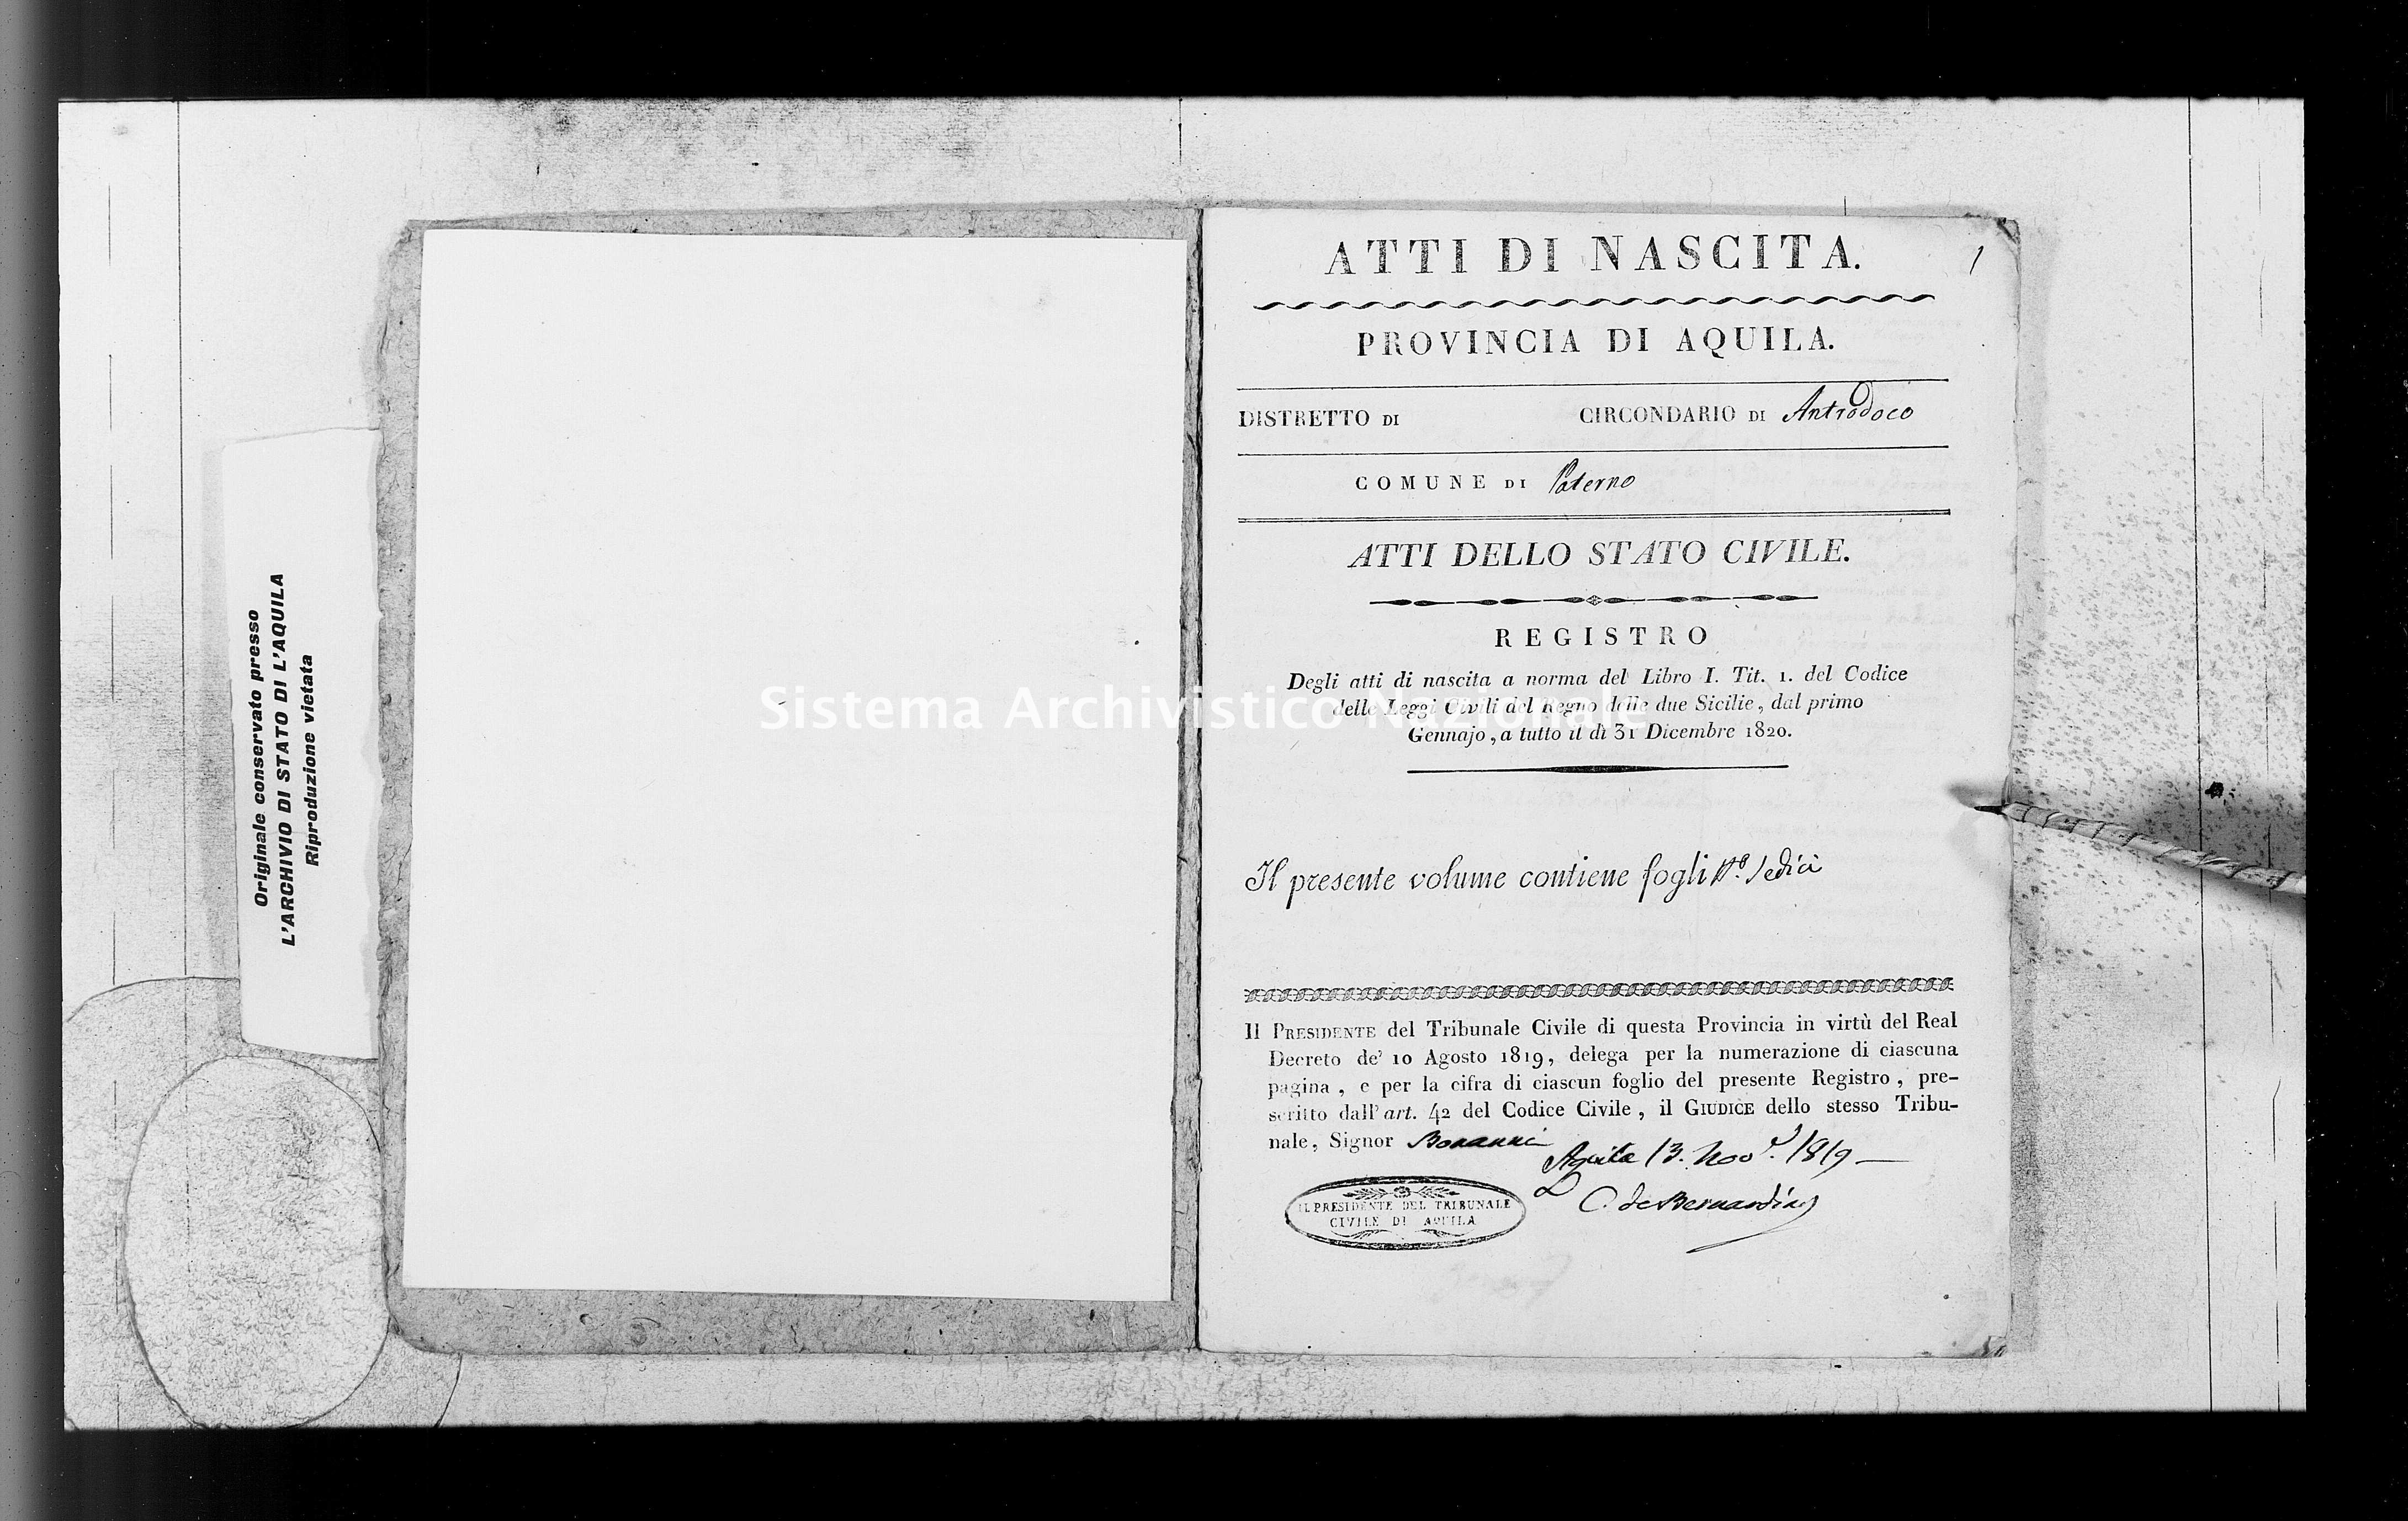 Archivio di stato di L'aquila - Stato civile della restaurazione - Paterno - Nati - 1820 - 1447 -